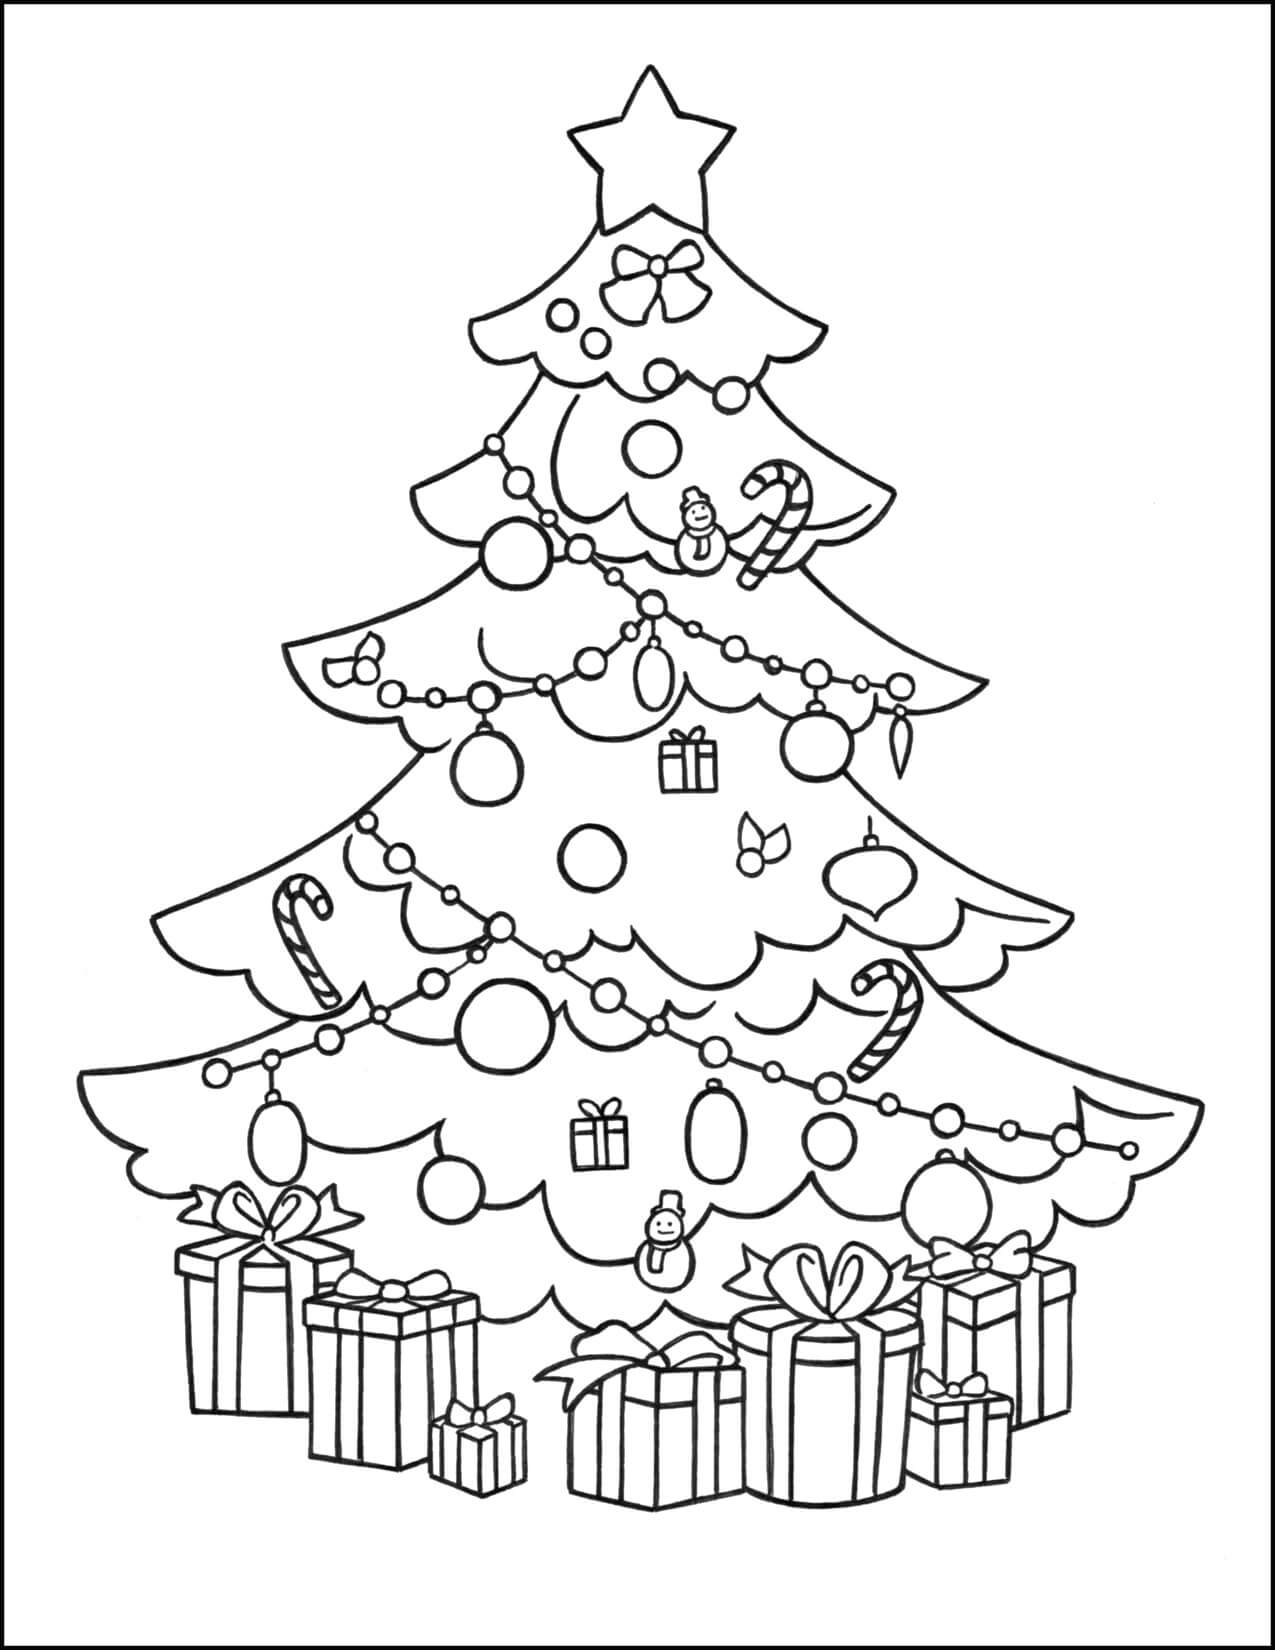 Printable Christmas Tree_82161